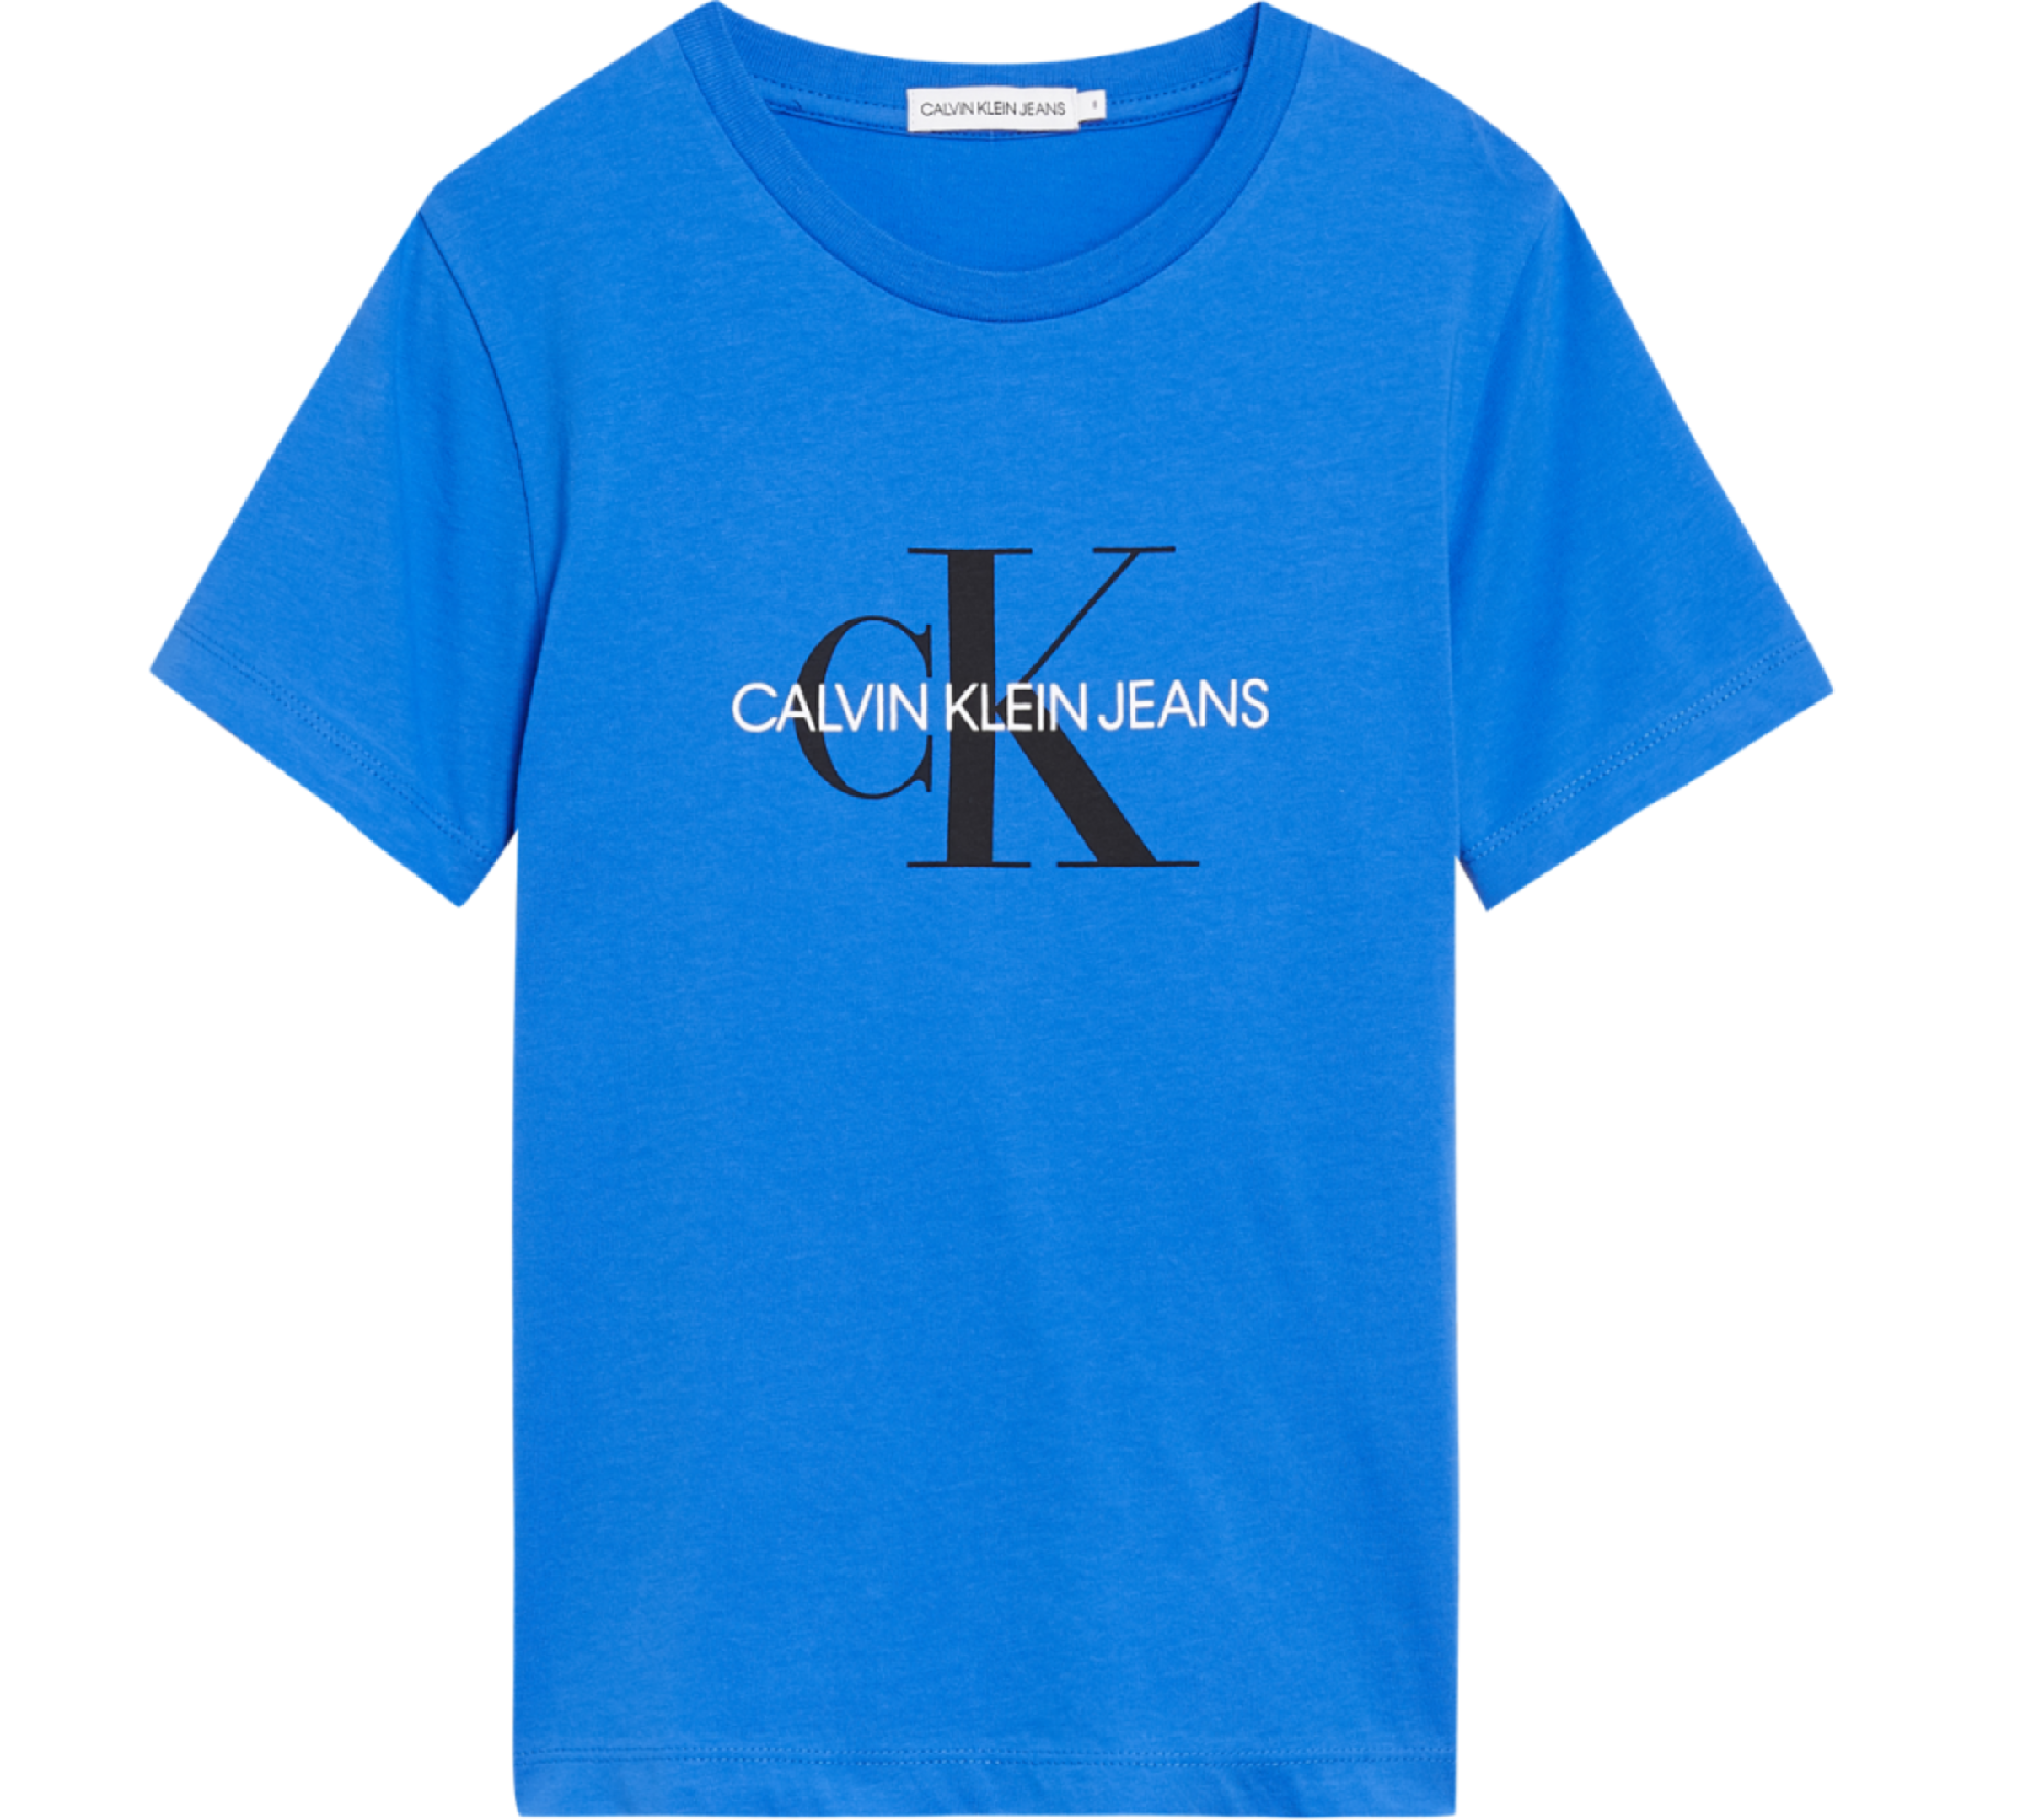 Unisexs Monogram Logo T-Shirt van Calvin Klein in de kleur Geel in maat 176.